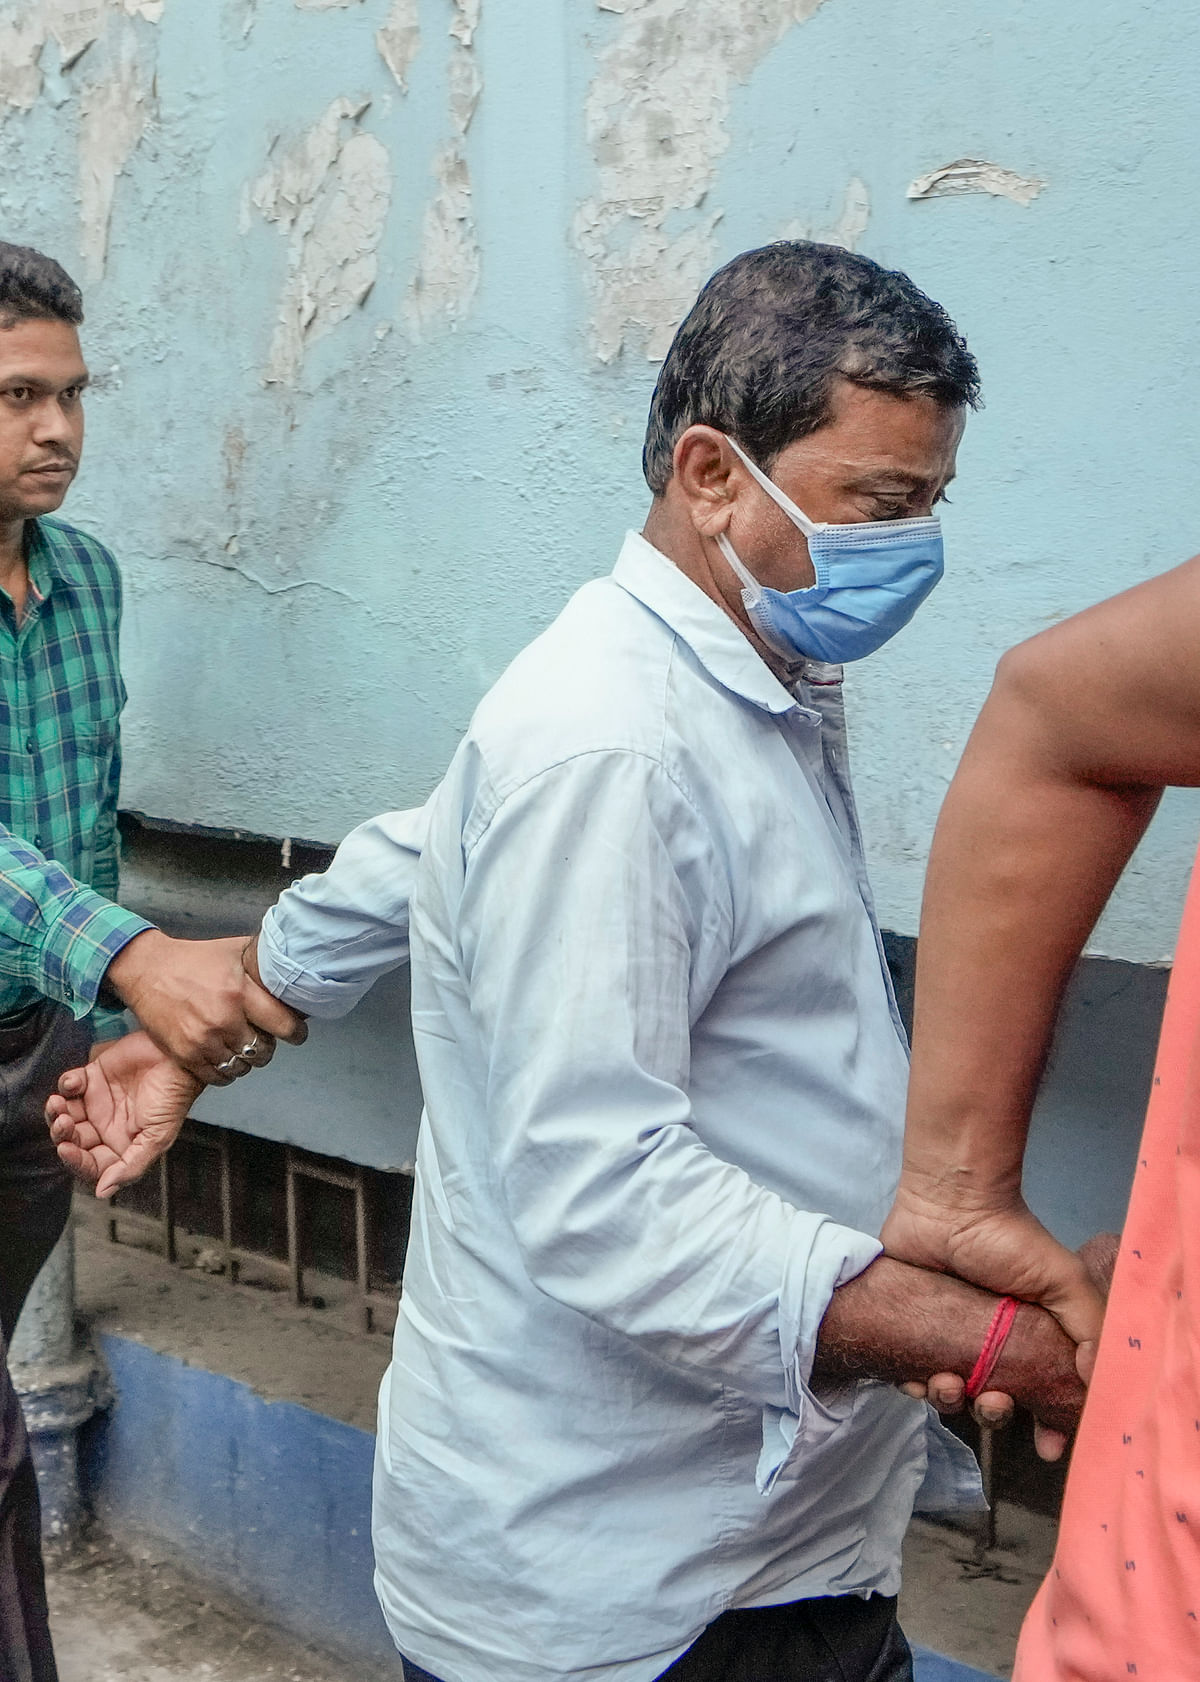 Bhupatinagar Blast Case: NIA की टीम ने भूपतिनगर ब्लास्ट केस में दो मुख्य साजिशकर्ताओं को गिरफ्तार किया है.